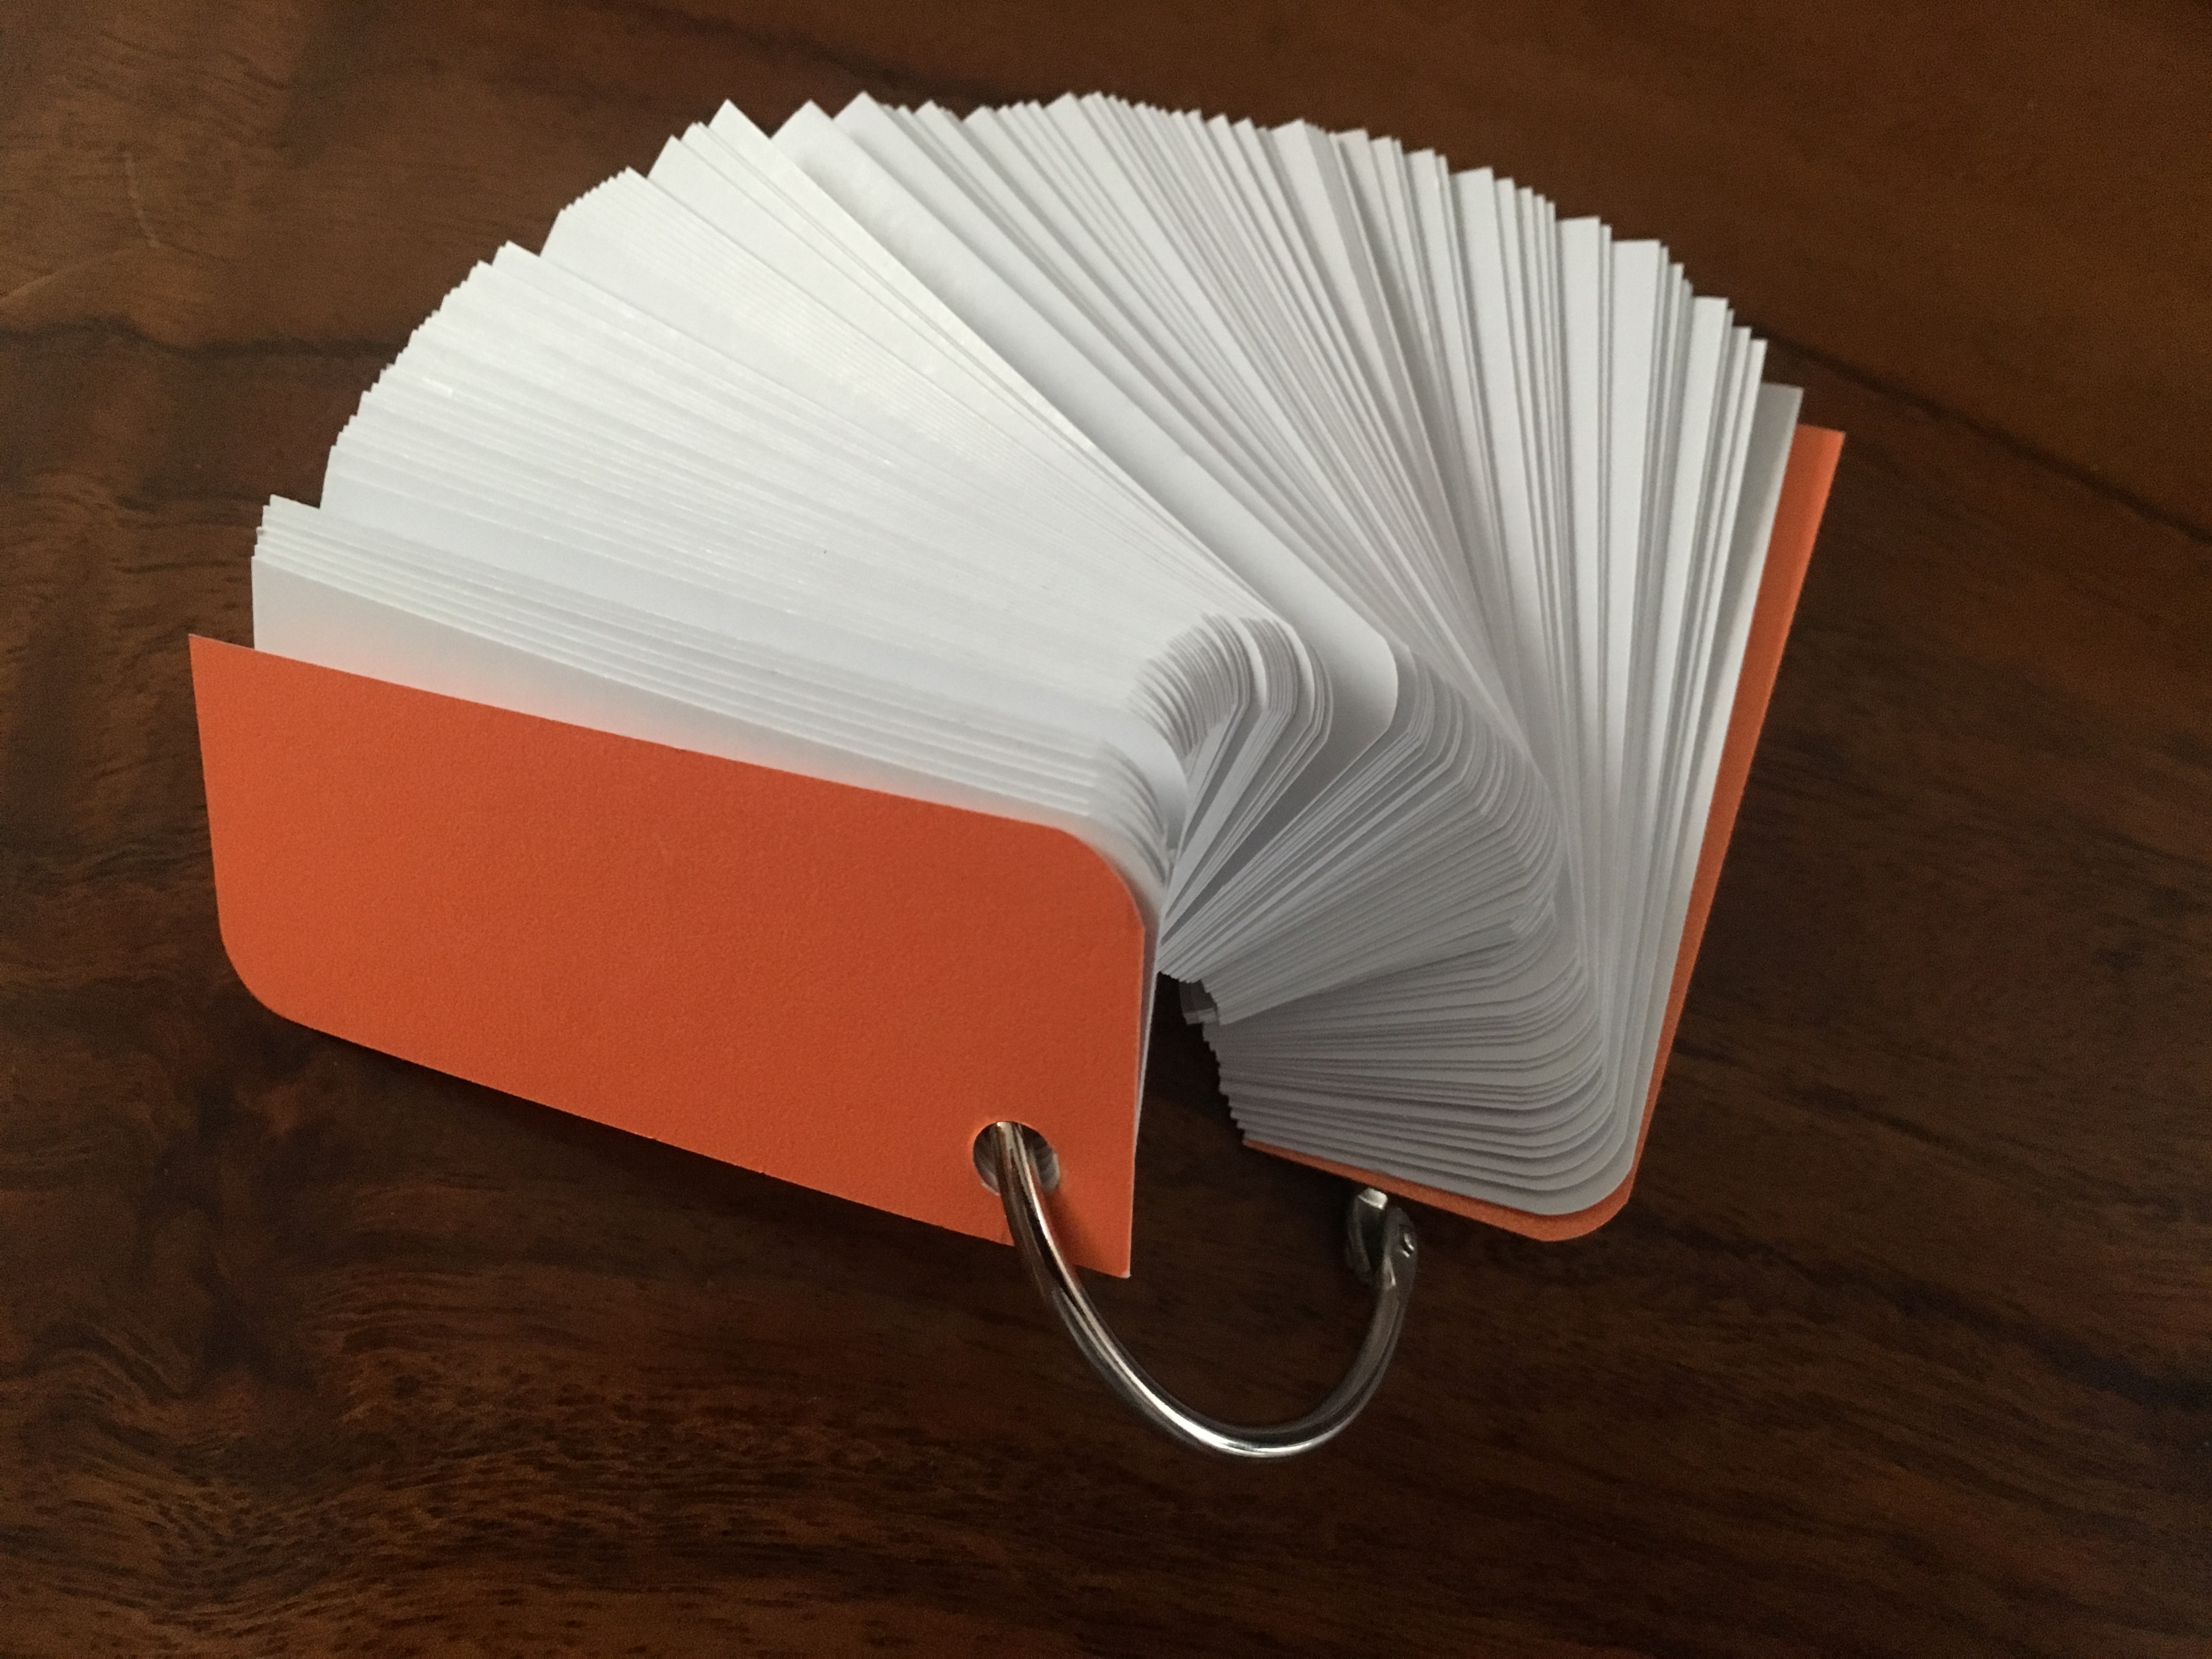 1000 thẻ flashcard trắng (tương ứng 10  xấp mỗi xấp 100 thẻ) 3x8 siêu dày bo góc kèm khoen bìa